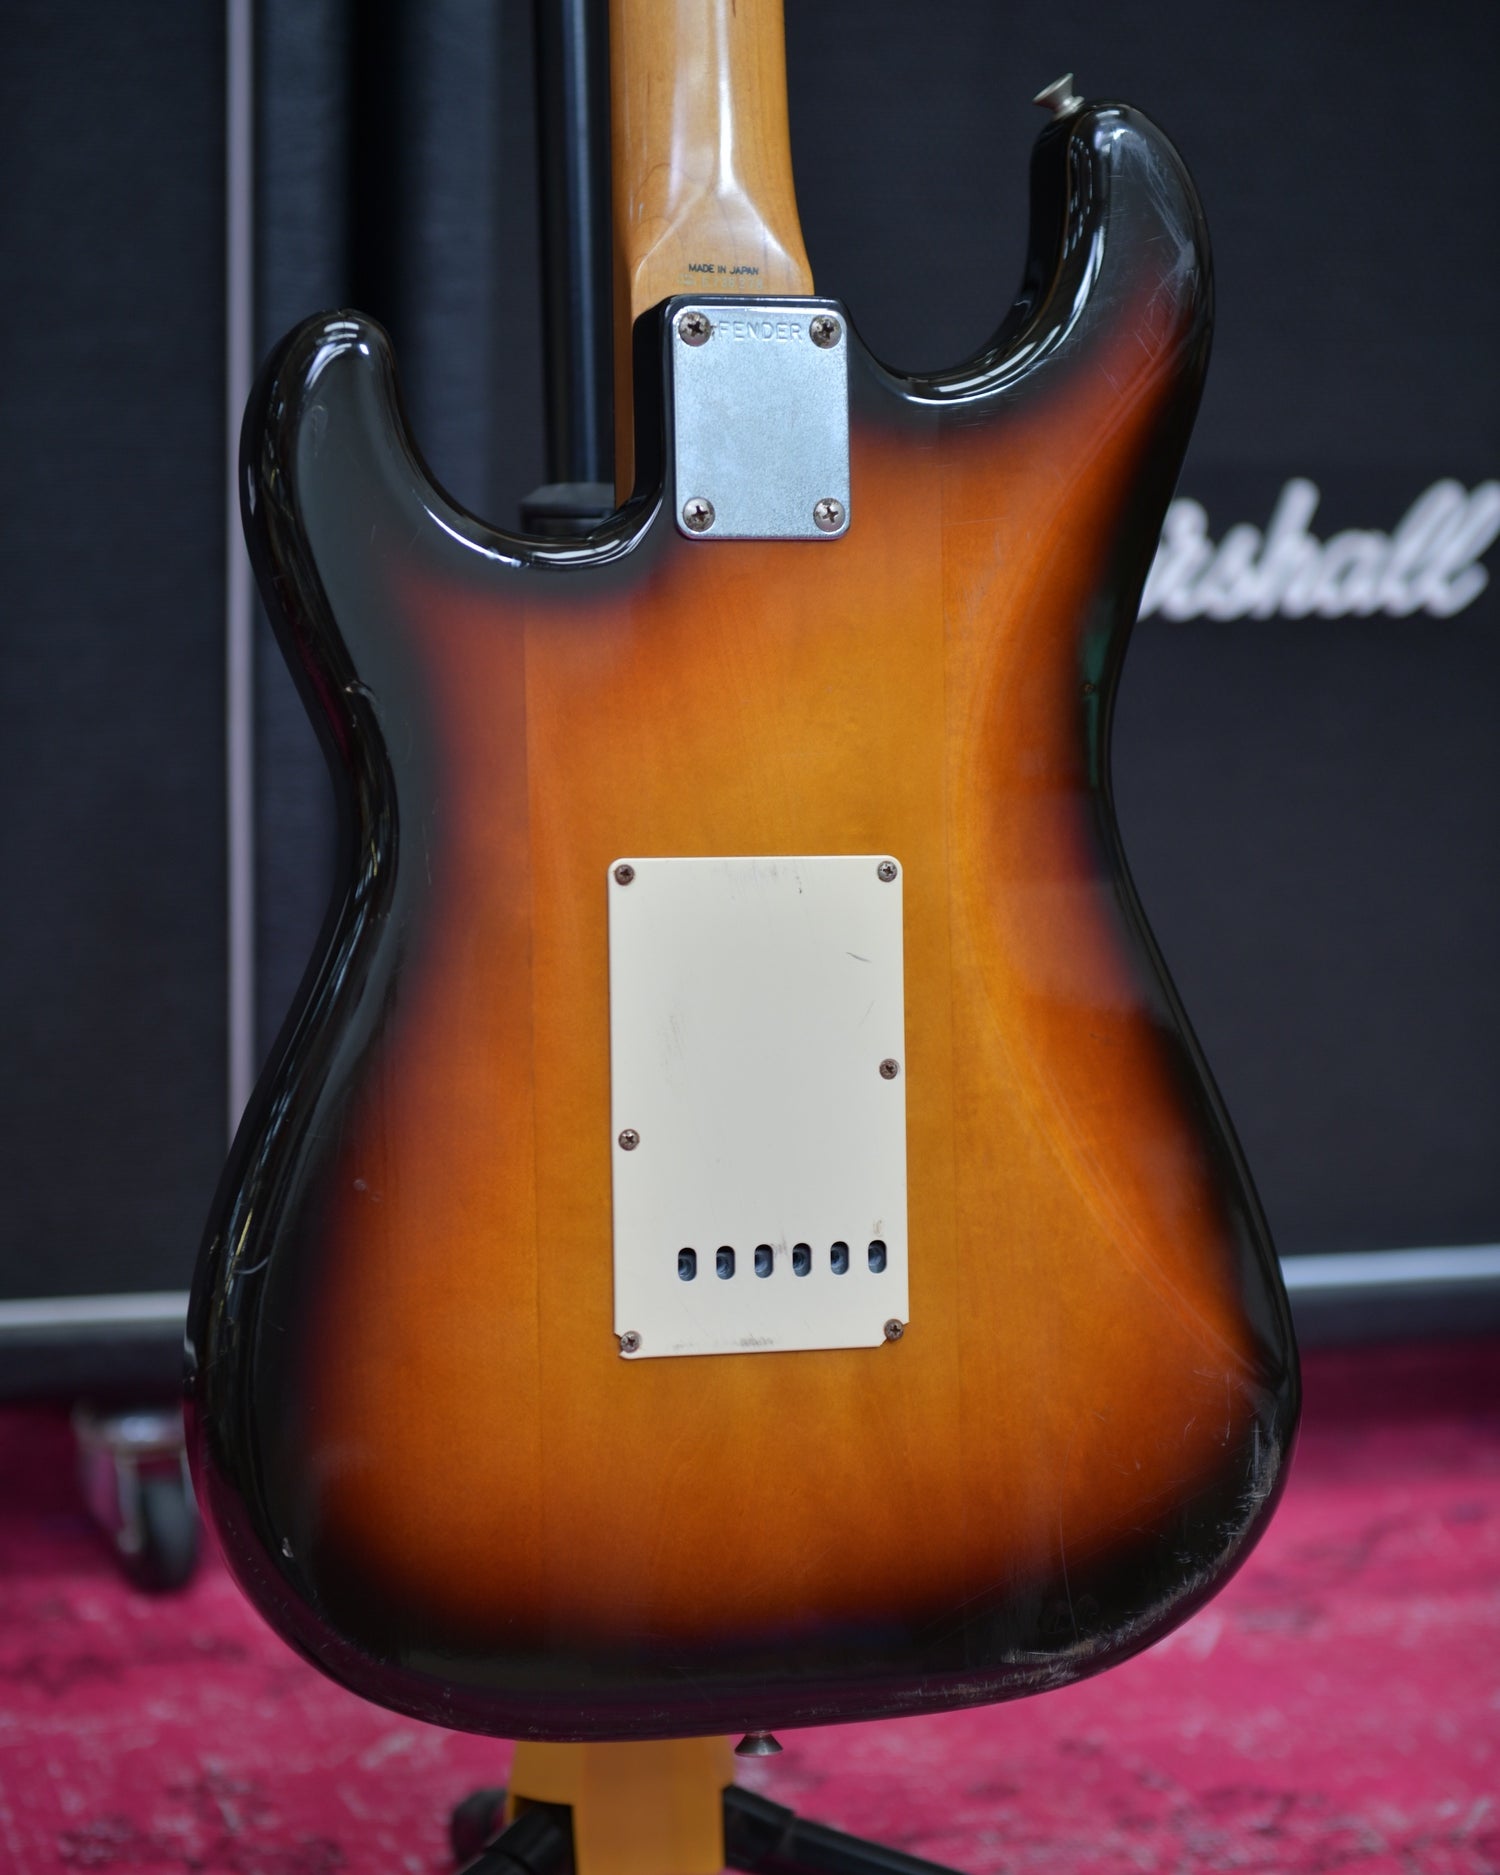 Fender Stratocaster MIJ ST62 3 Tone Sunburst 1985 E-Serial Japan